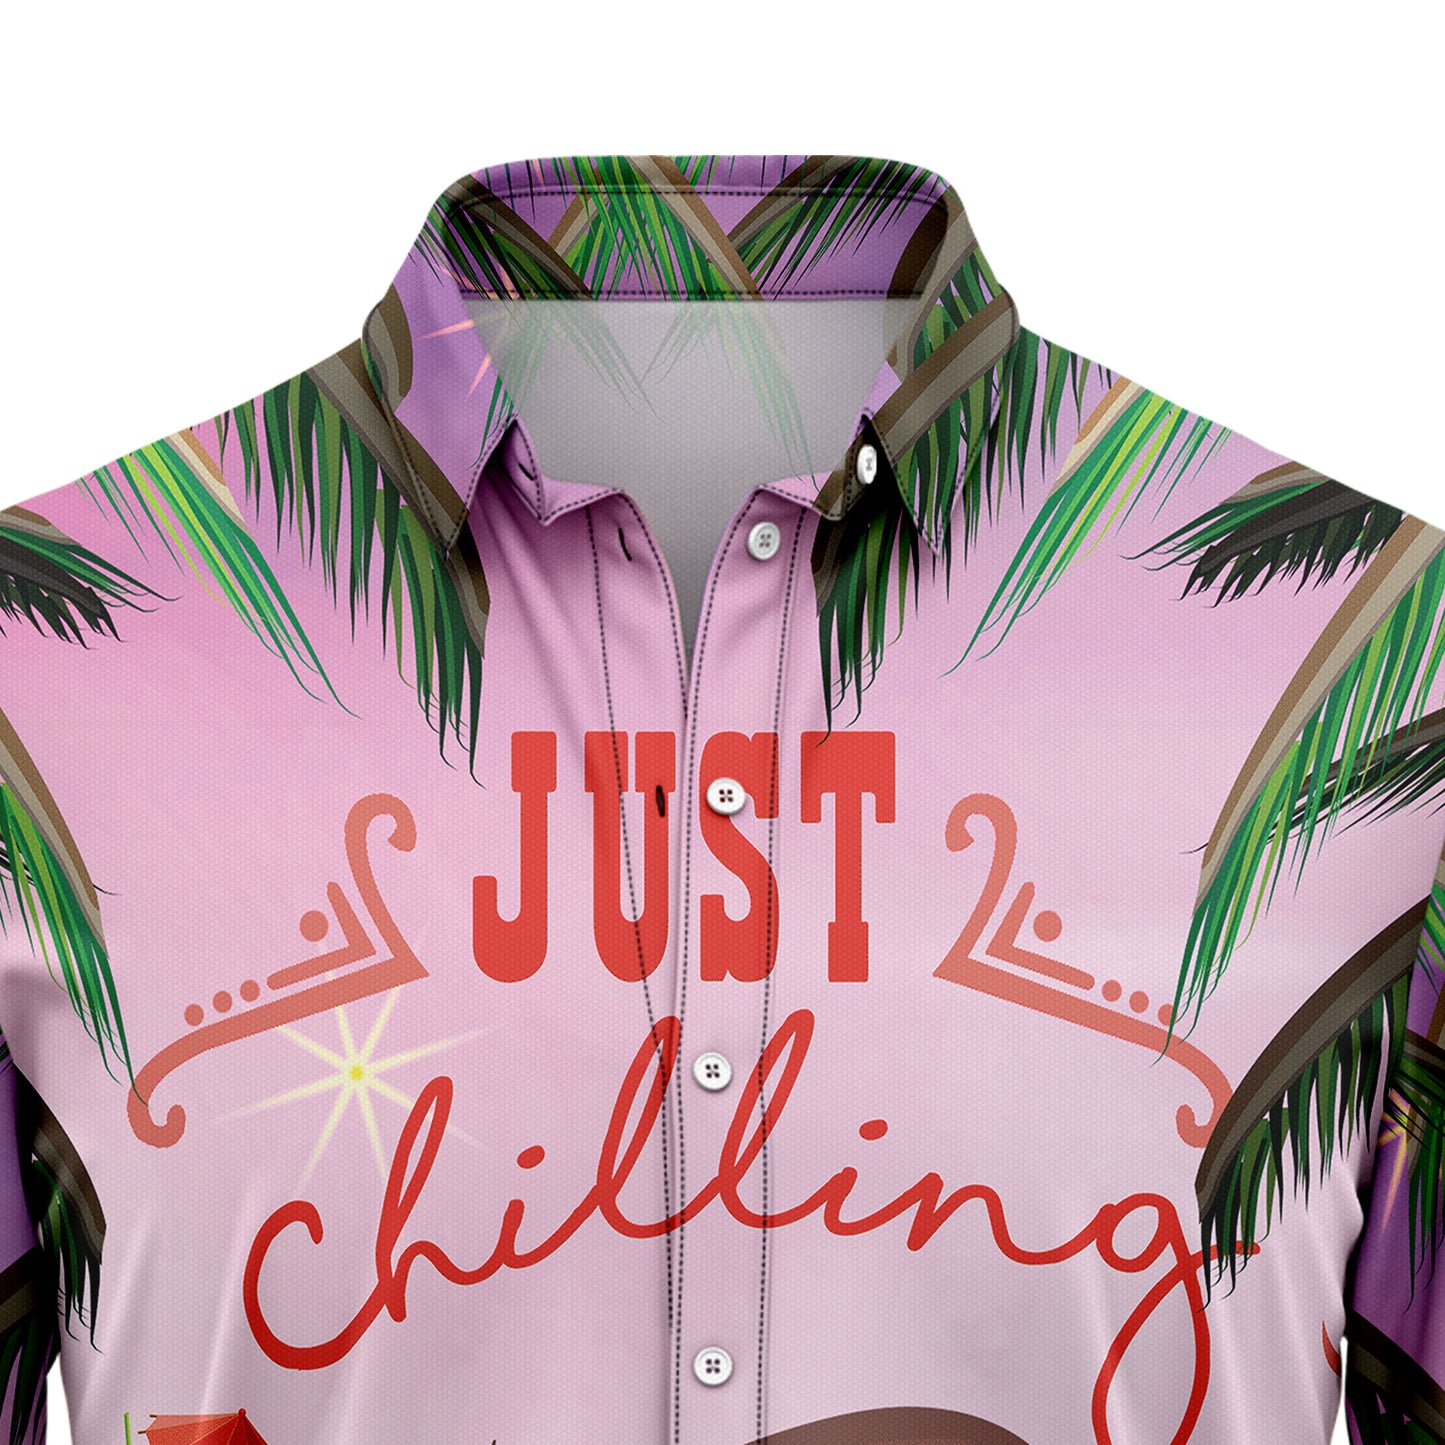 Sloth Chilling T1407 Hawaiian Shirt